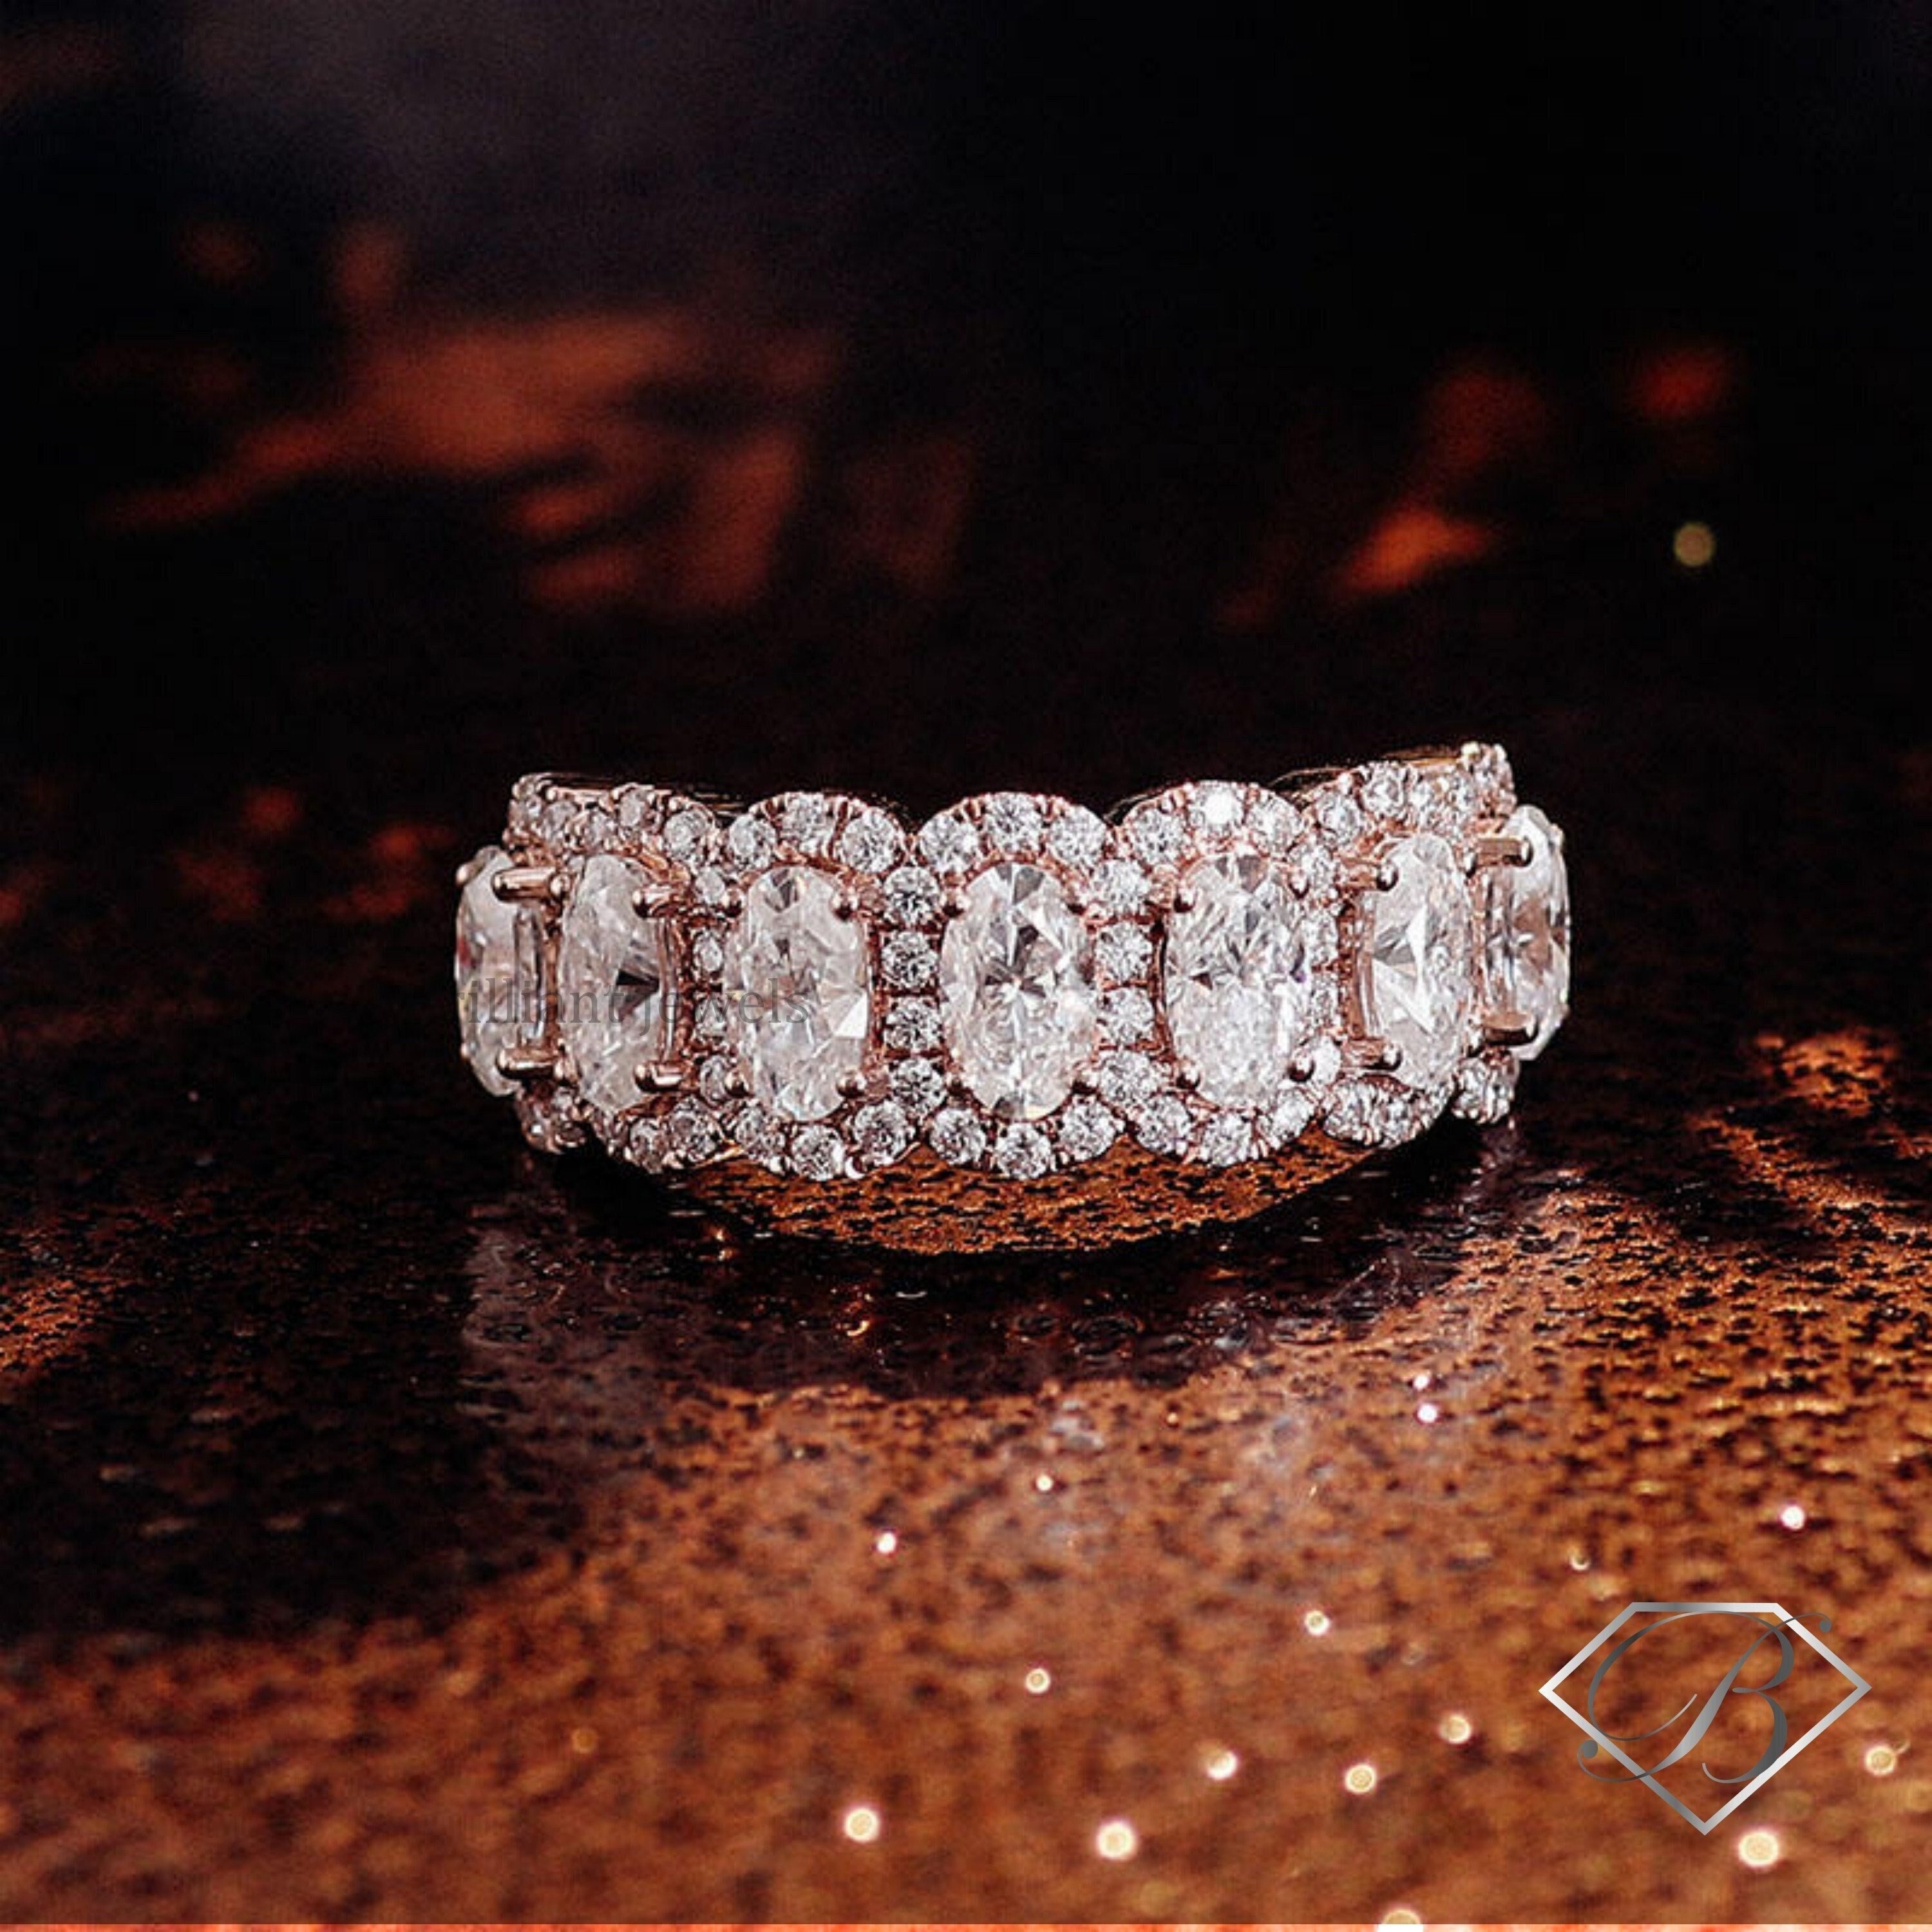 Louis Vuitton Ambrose Ring Pink Gold (18K) Fashion No Stone Band Ring P  BF560632